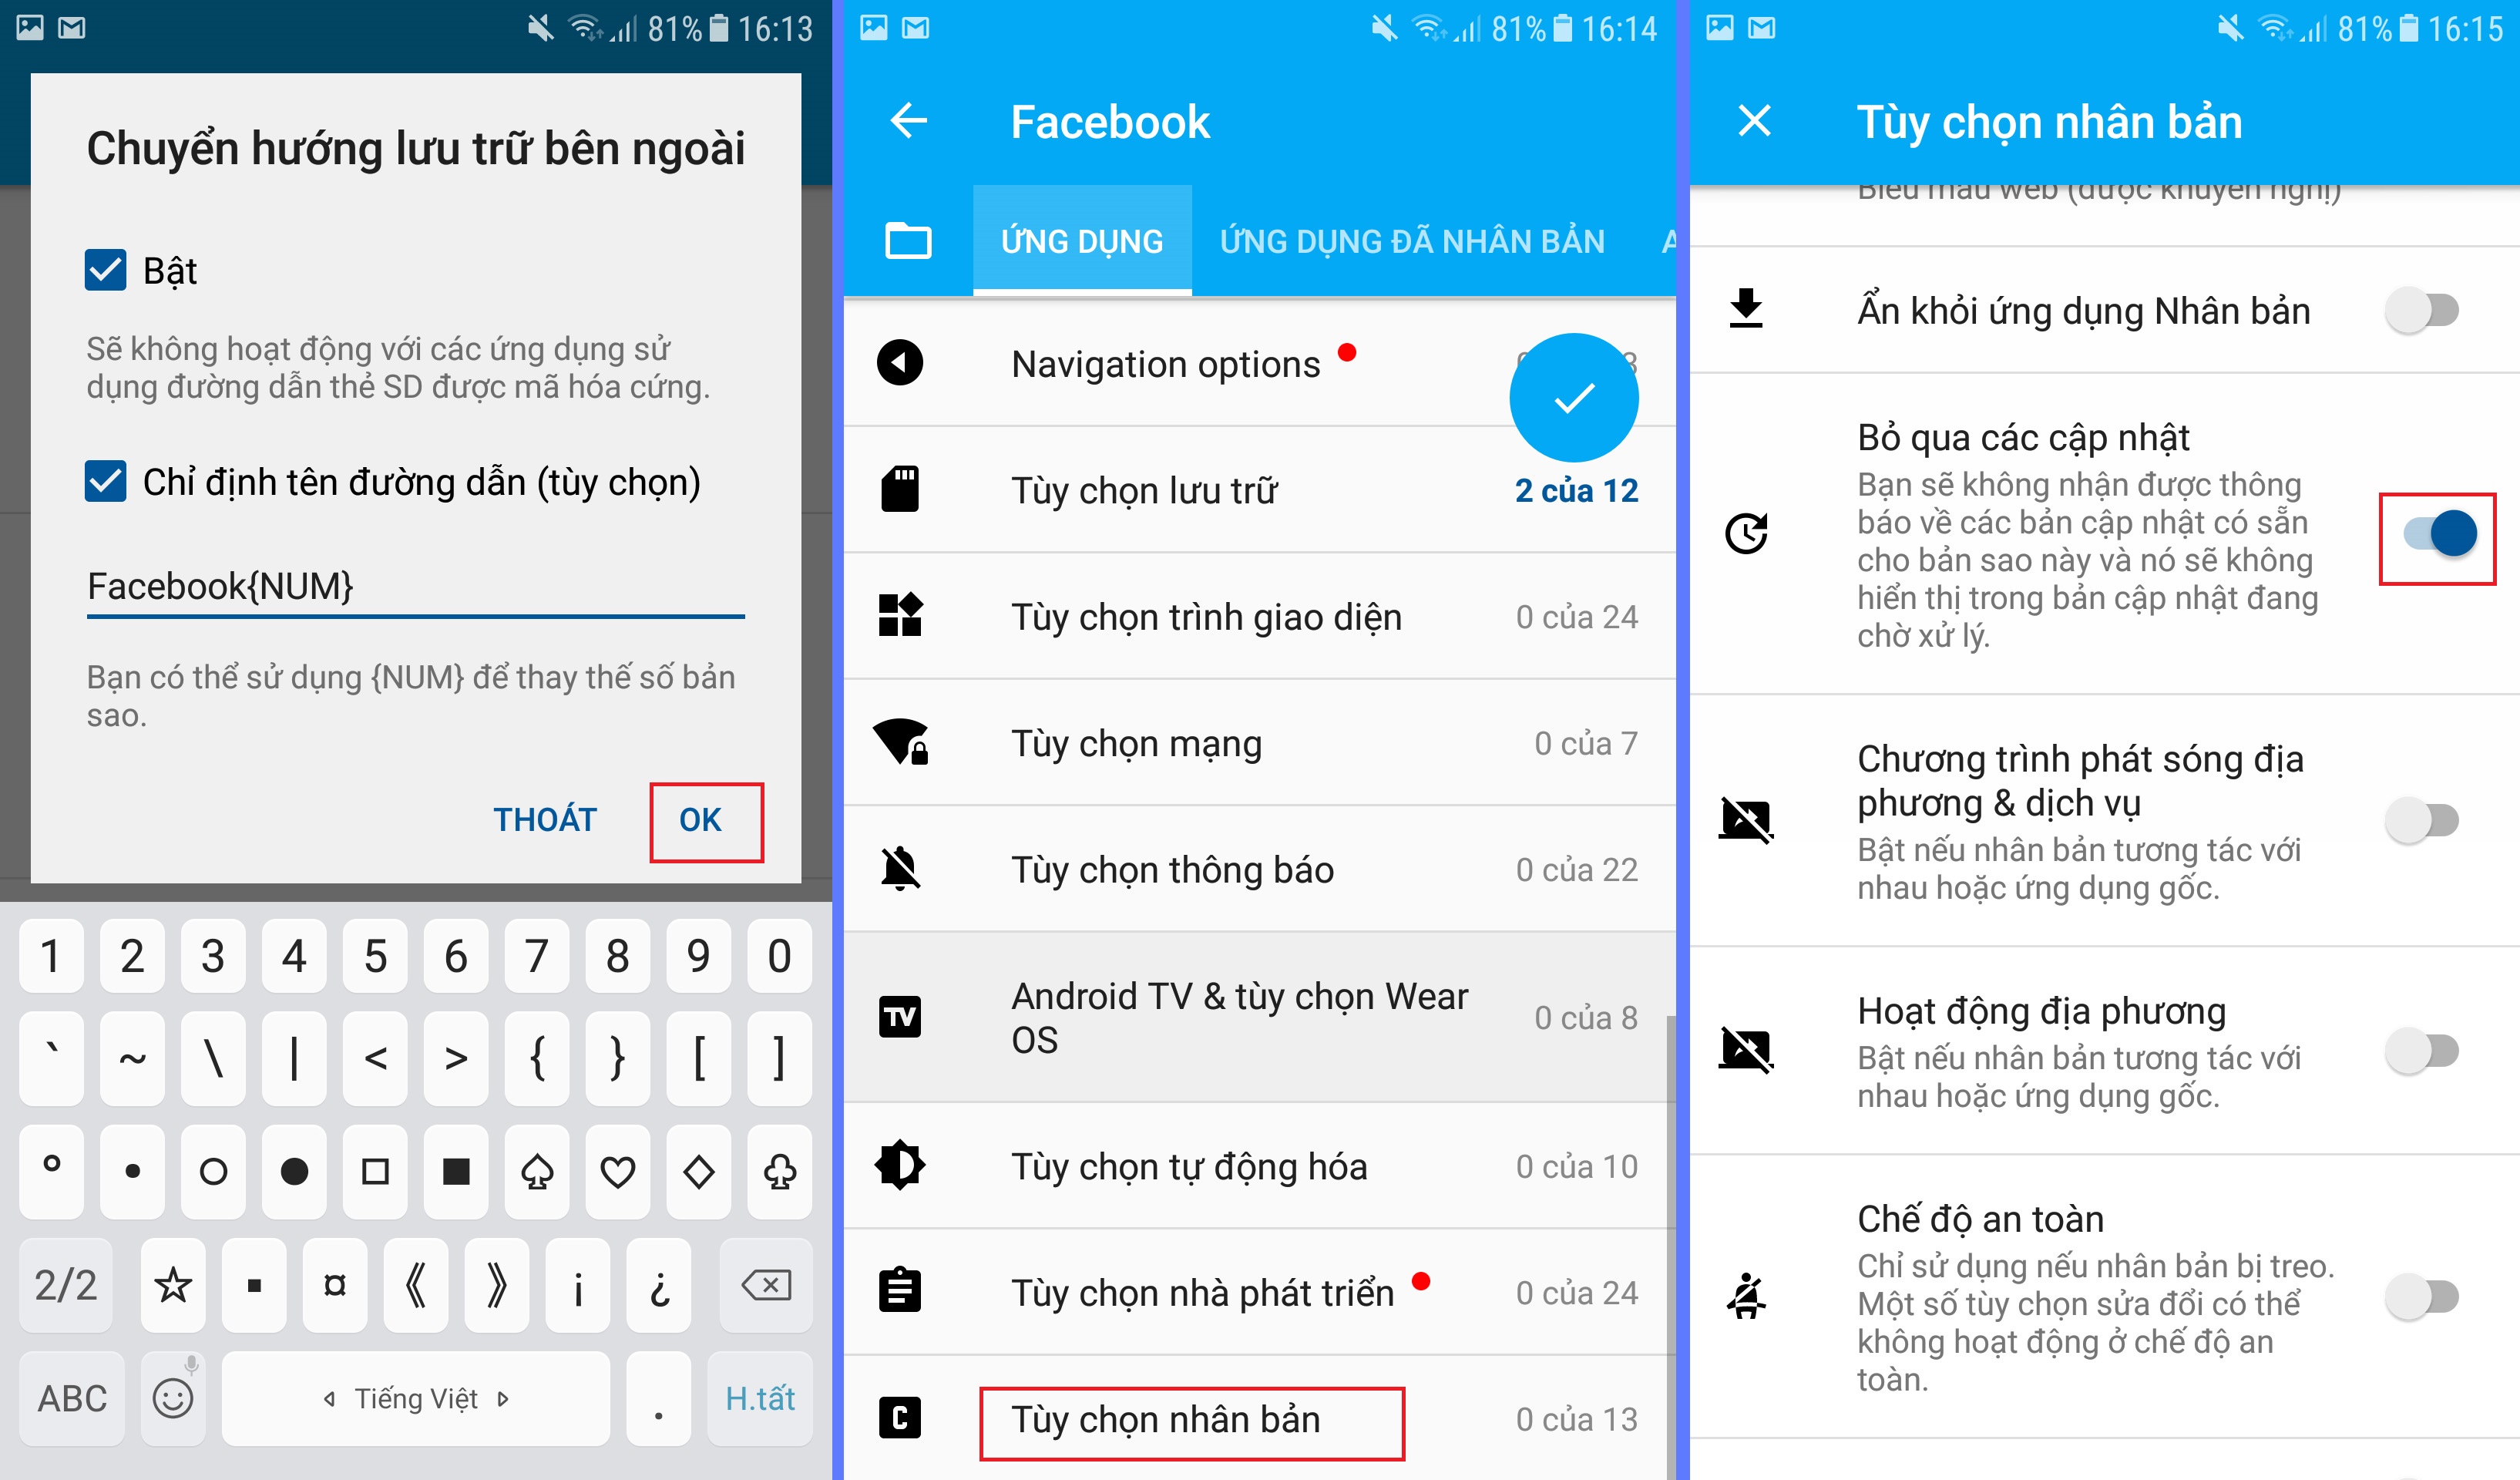  Hướng dẫn cài đặt và nhân bản app Facebook nuôi nick điện thoại Ninja System